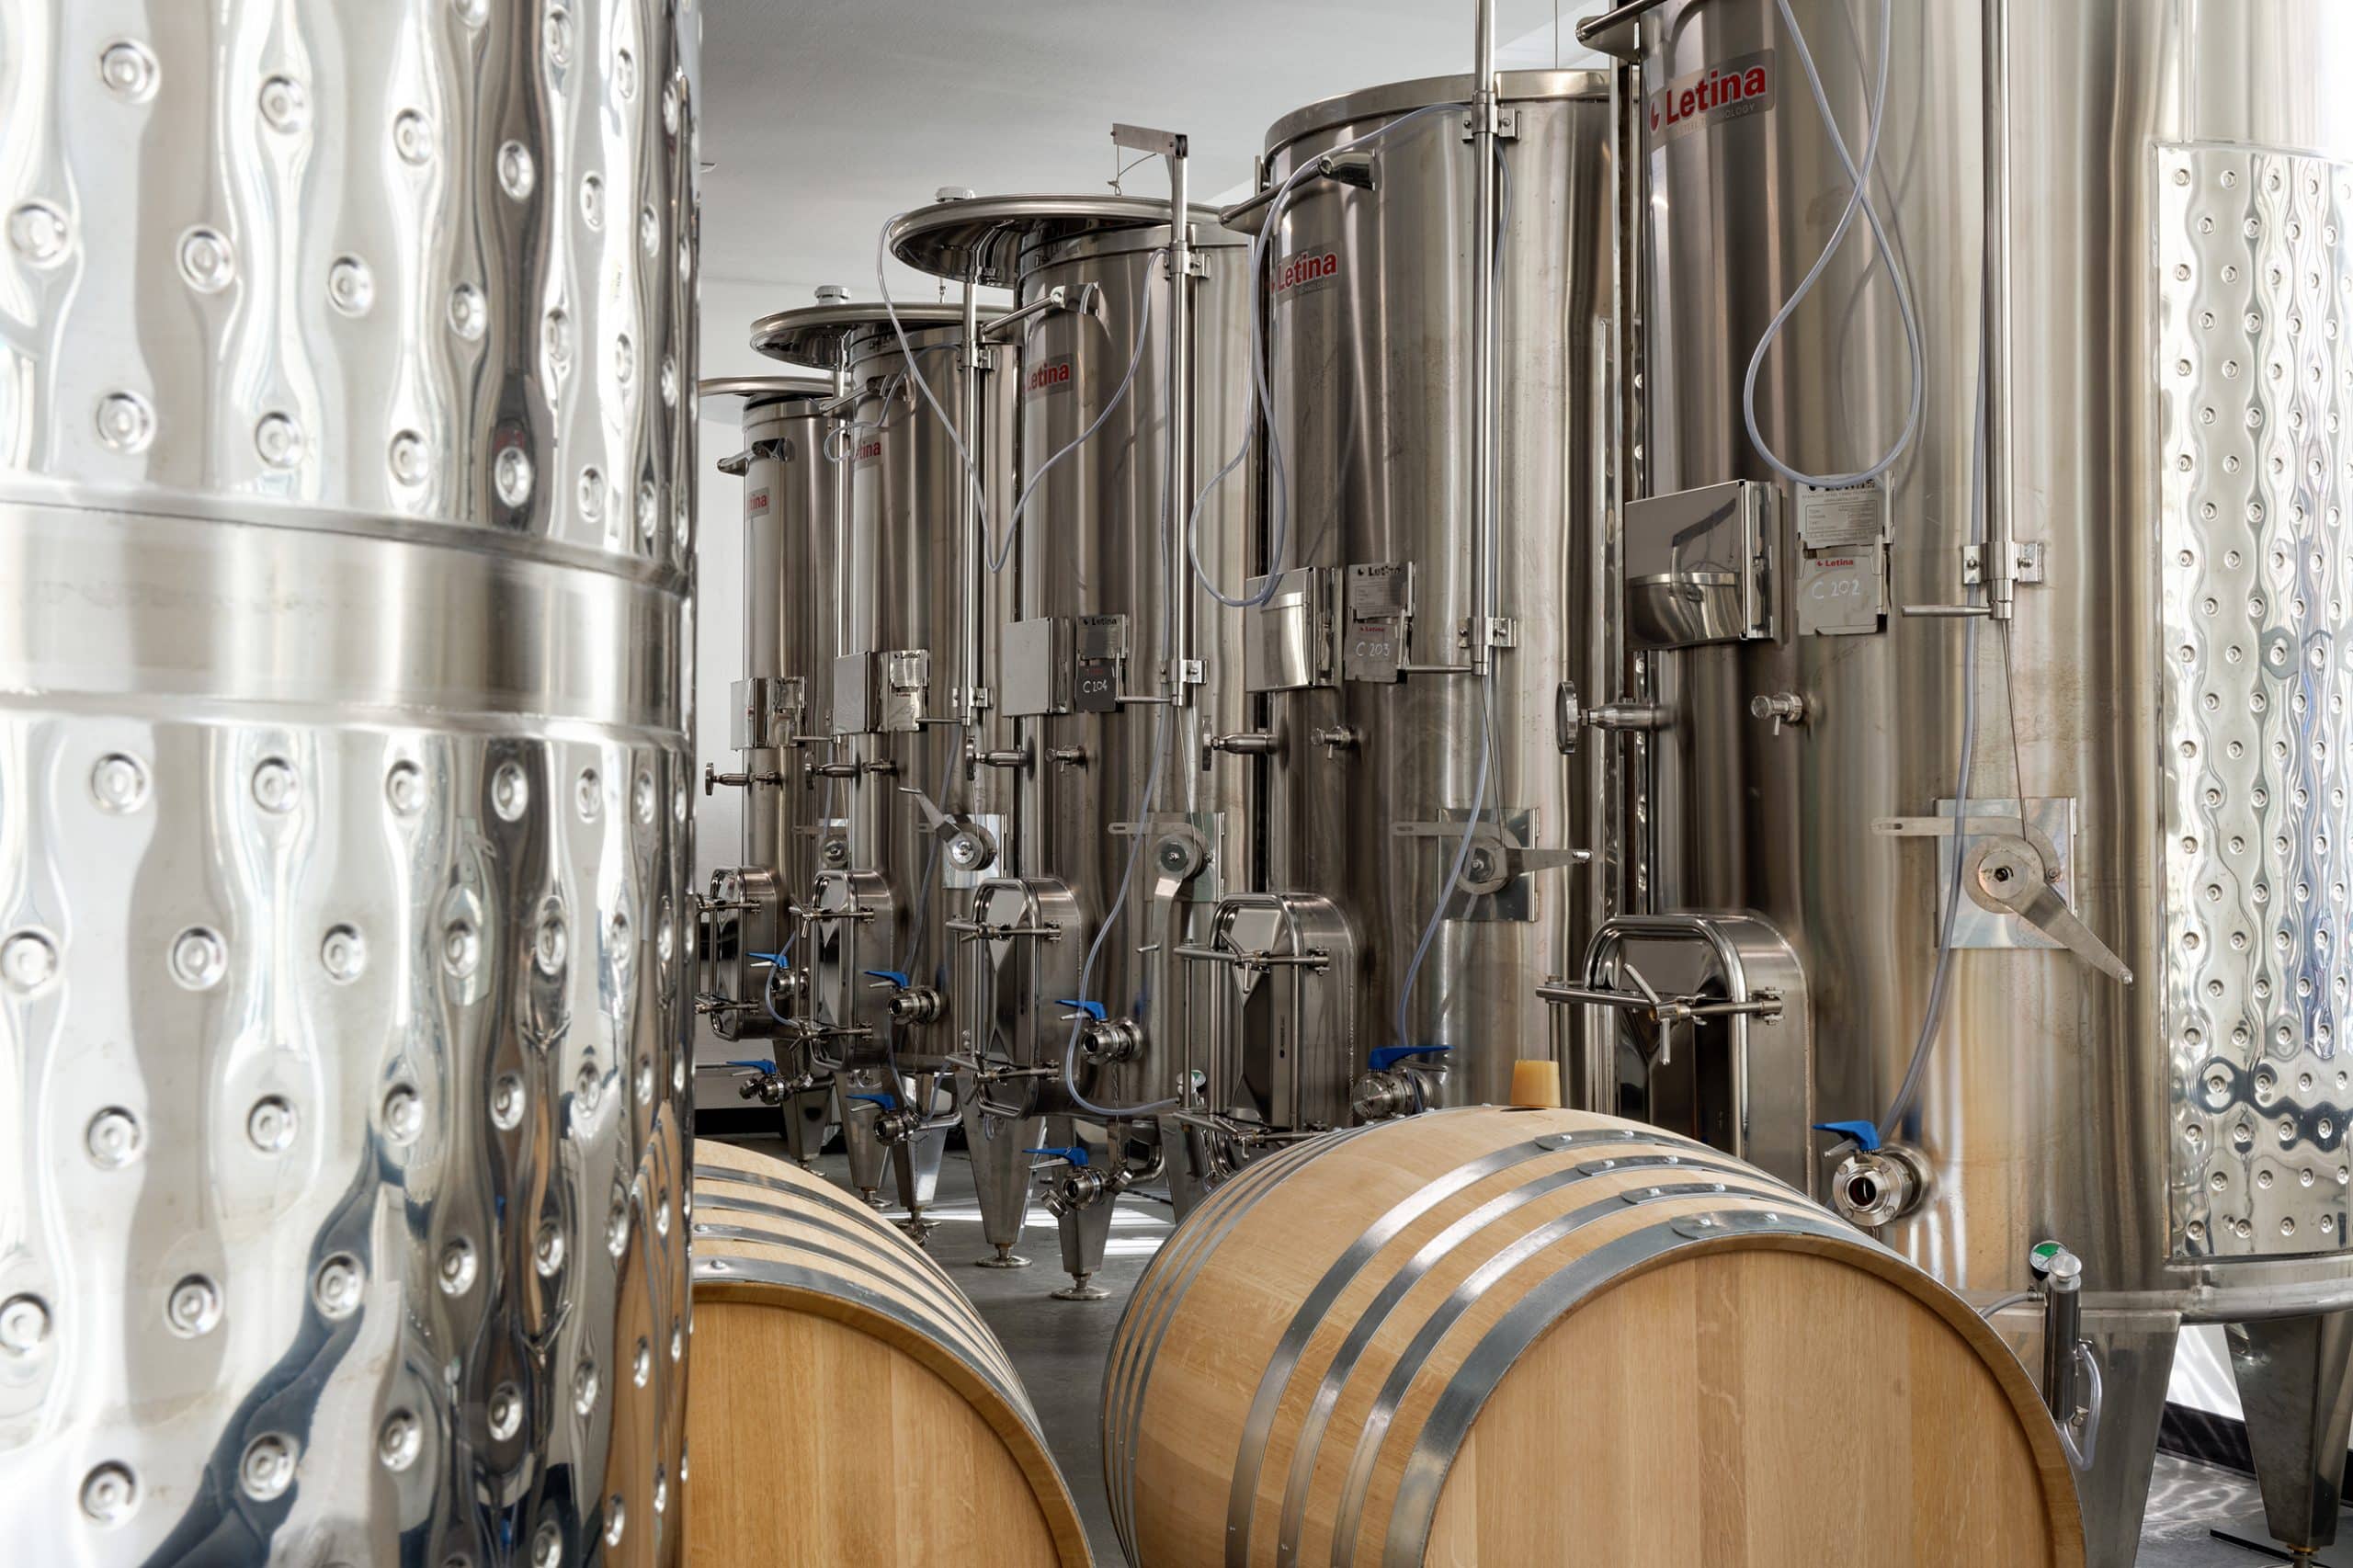 Cuve de fermentation - VIN series - Letina - pour le vin / en inox /  cylindrique